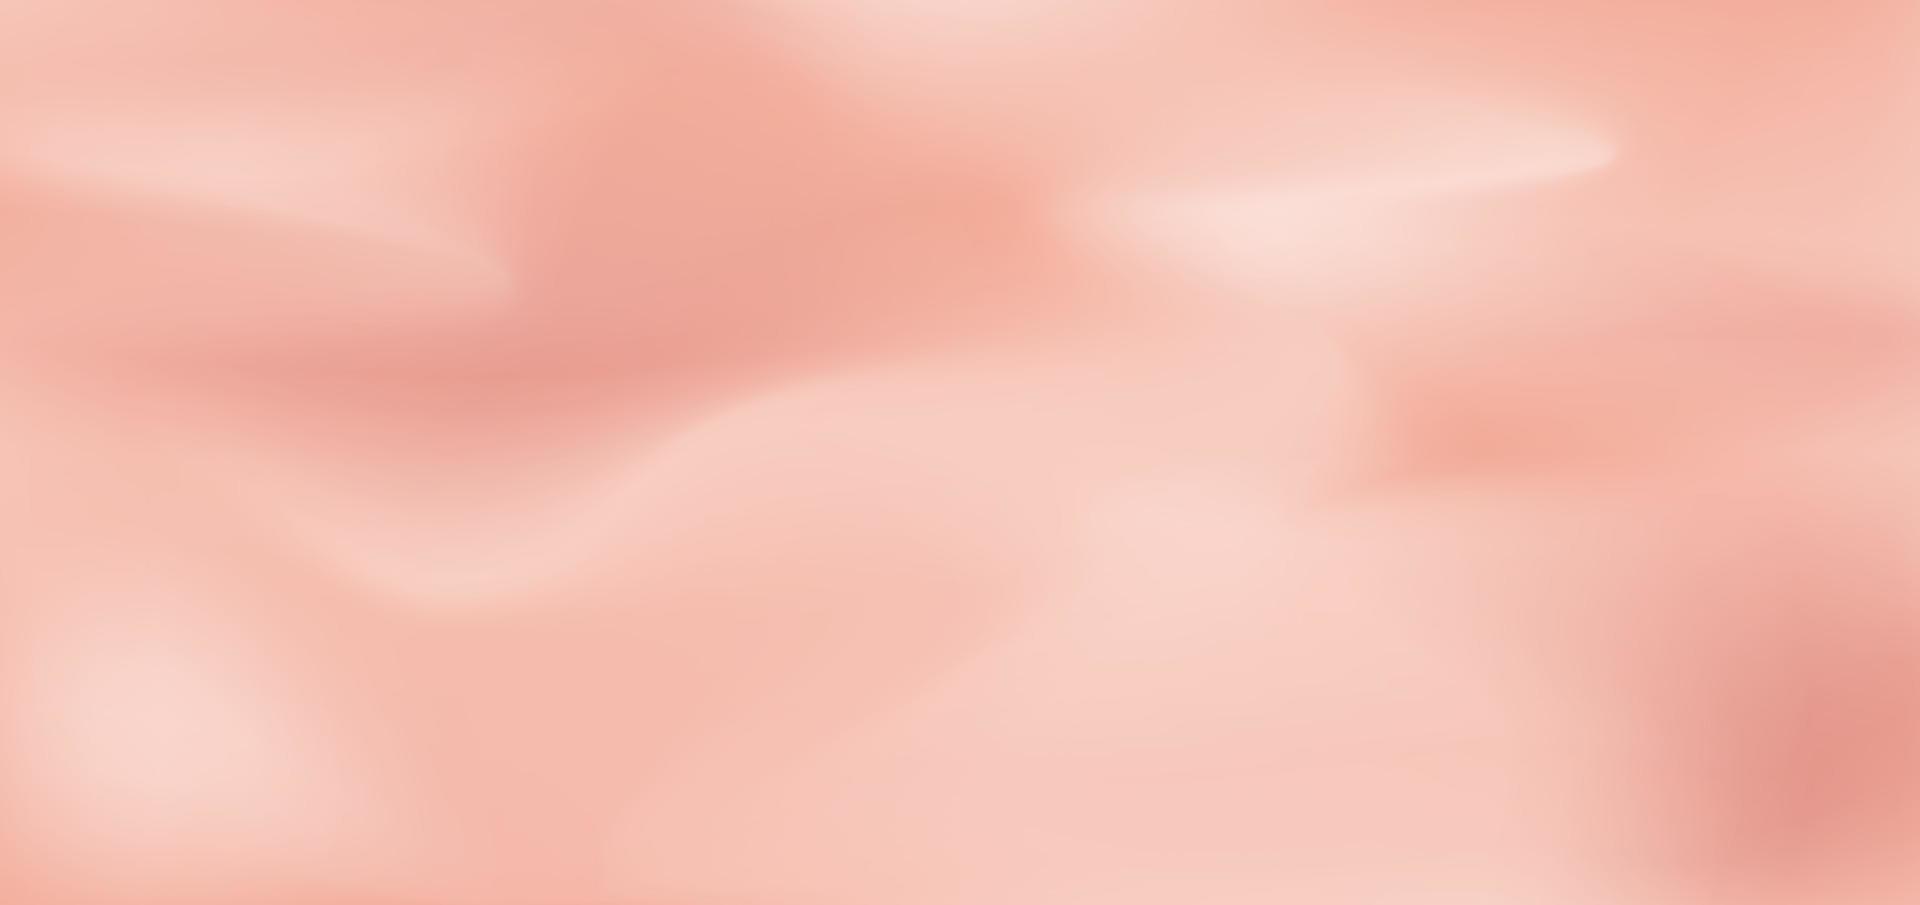 astratto morbido rosa pastello fluido sfondo sfocato. puoi utilizzare per annunci, poster, modelli, presentazioni aziendali. vettore